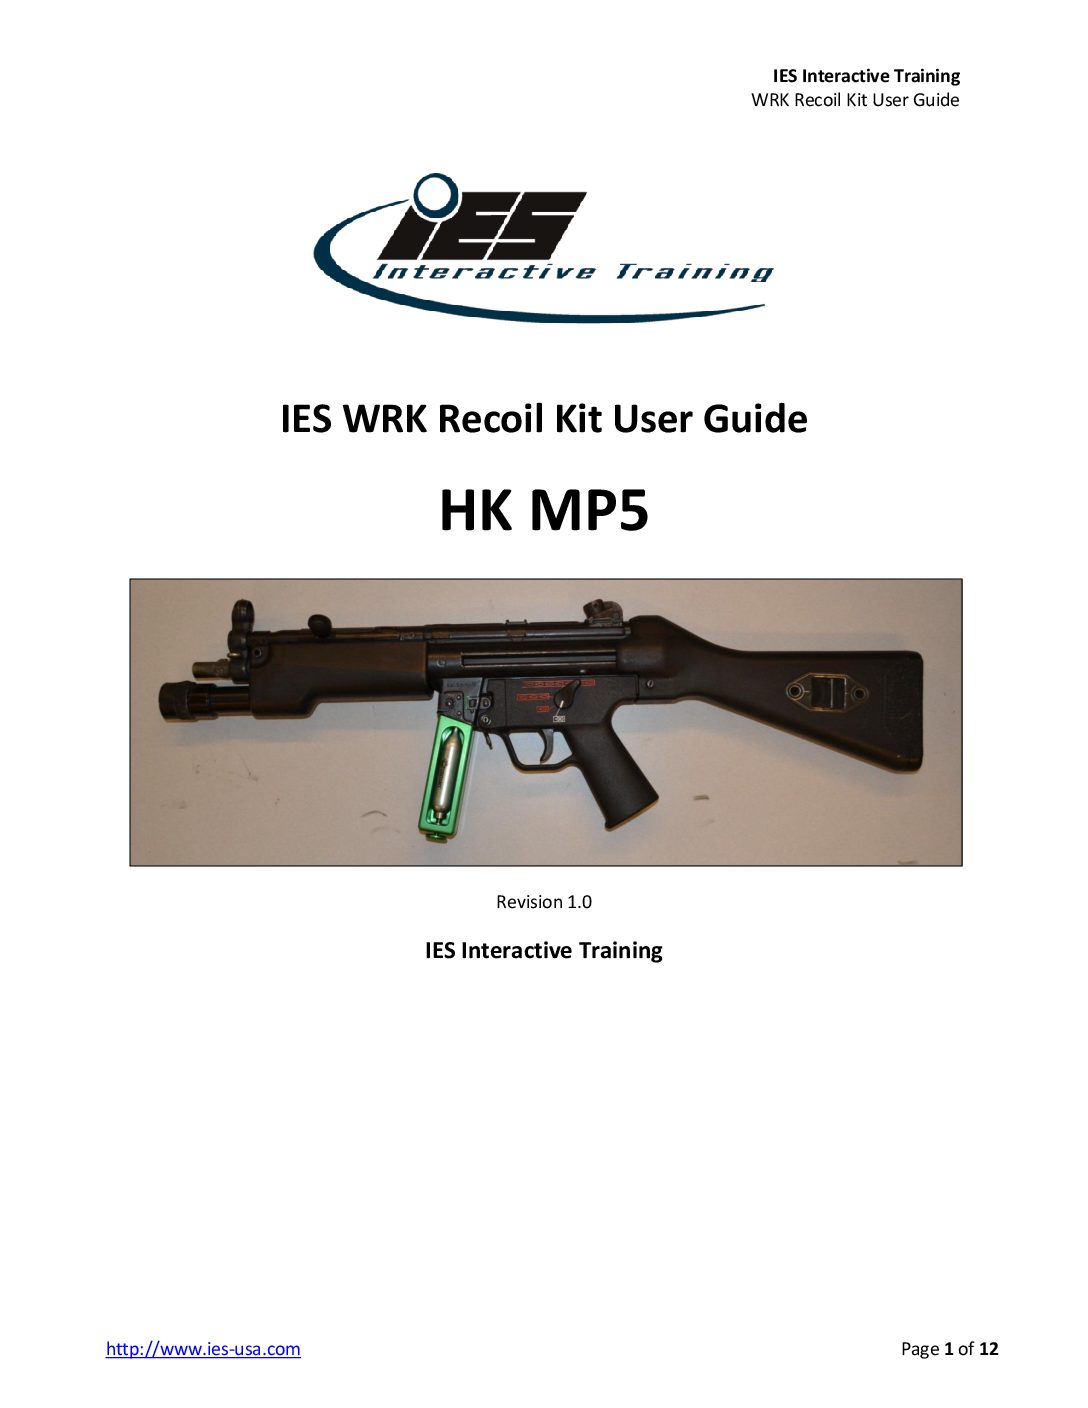 H&K MP5 WRK Recoil Kit User Guide